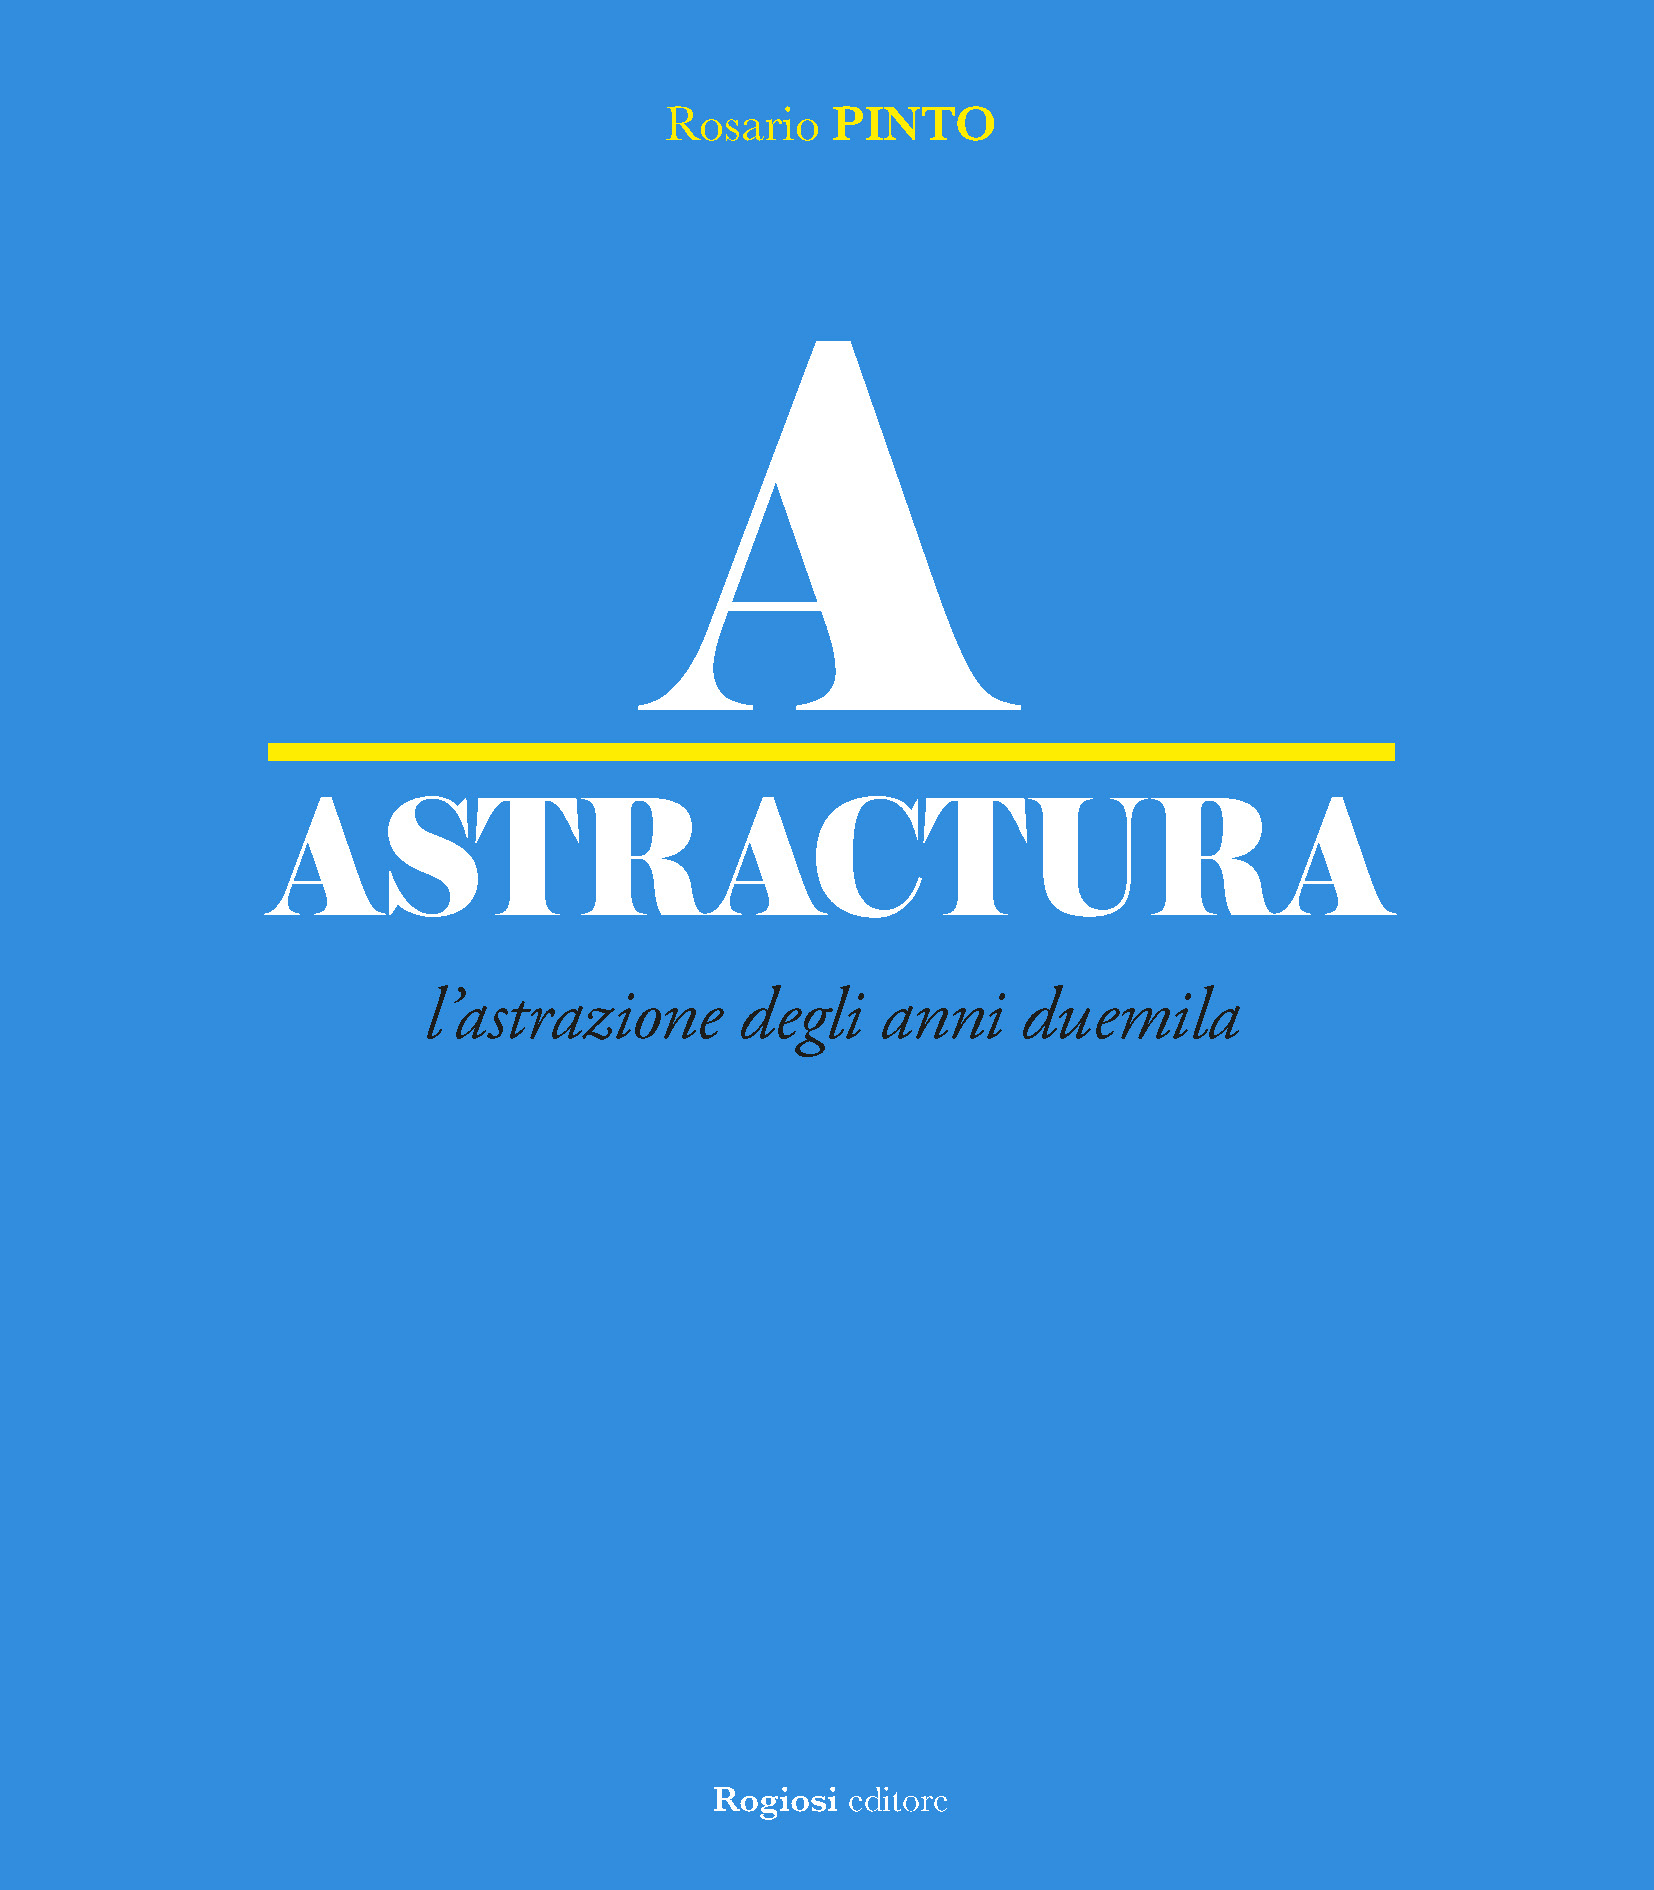 Rogiosi Editore presenta ‘Astractura’, a cura di Rosario Pinto